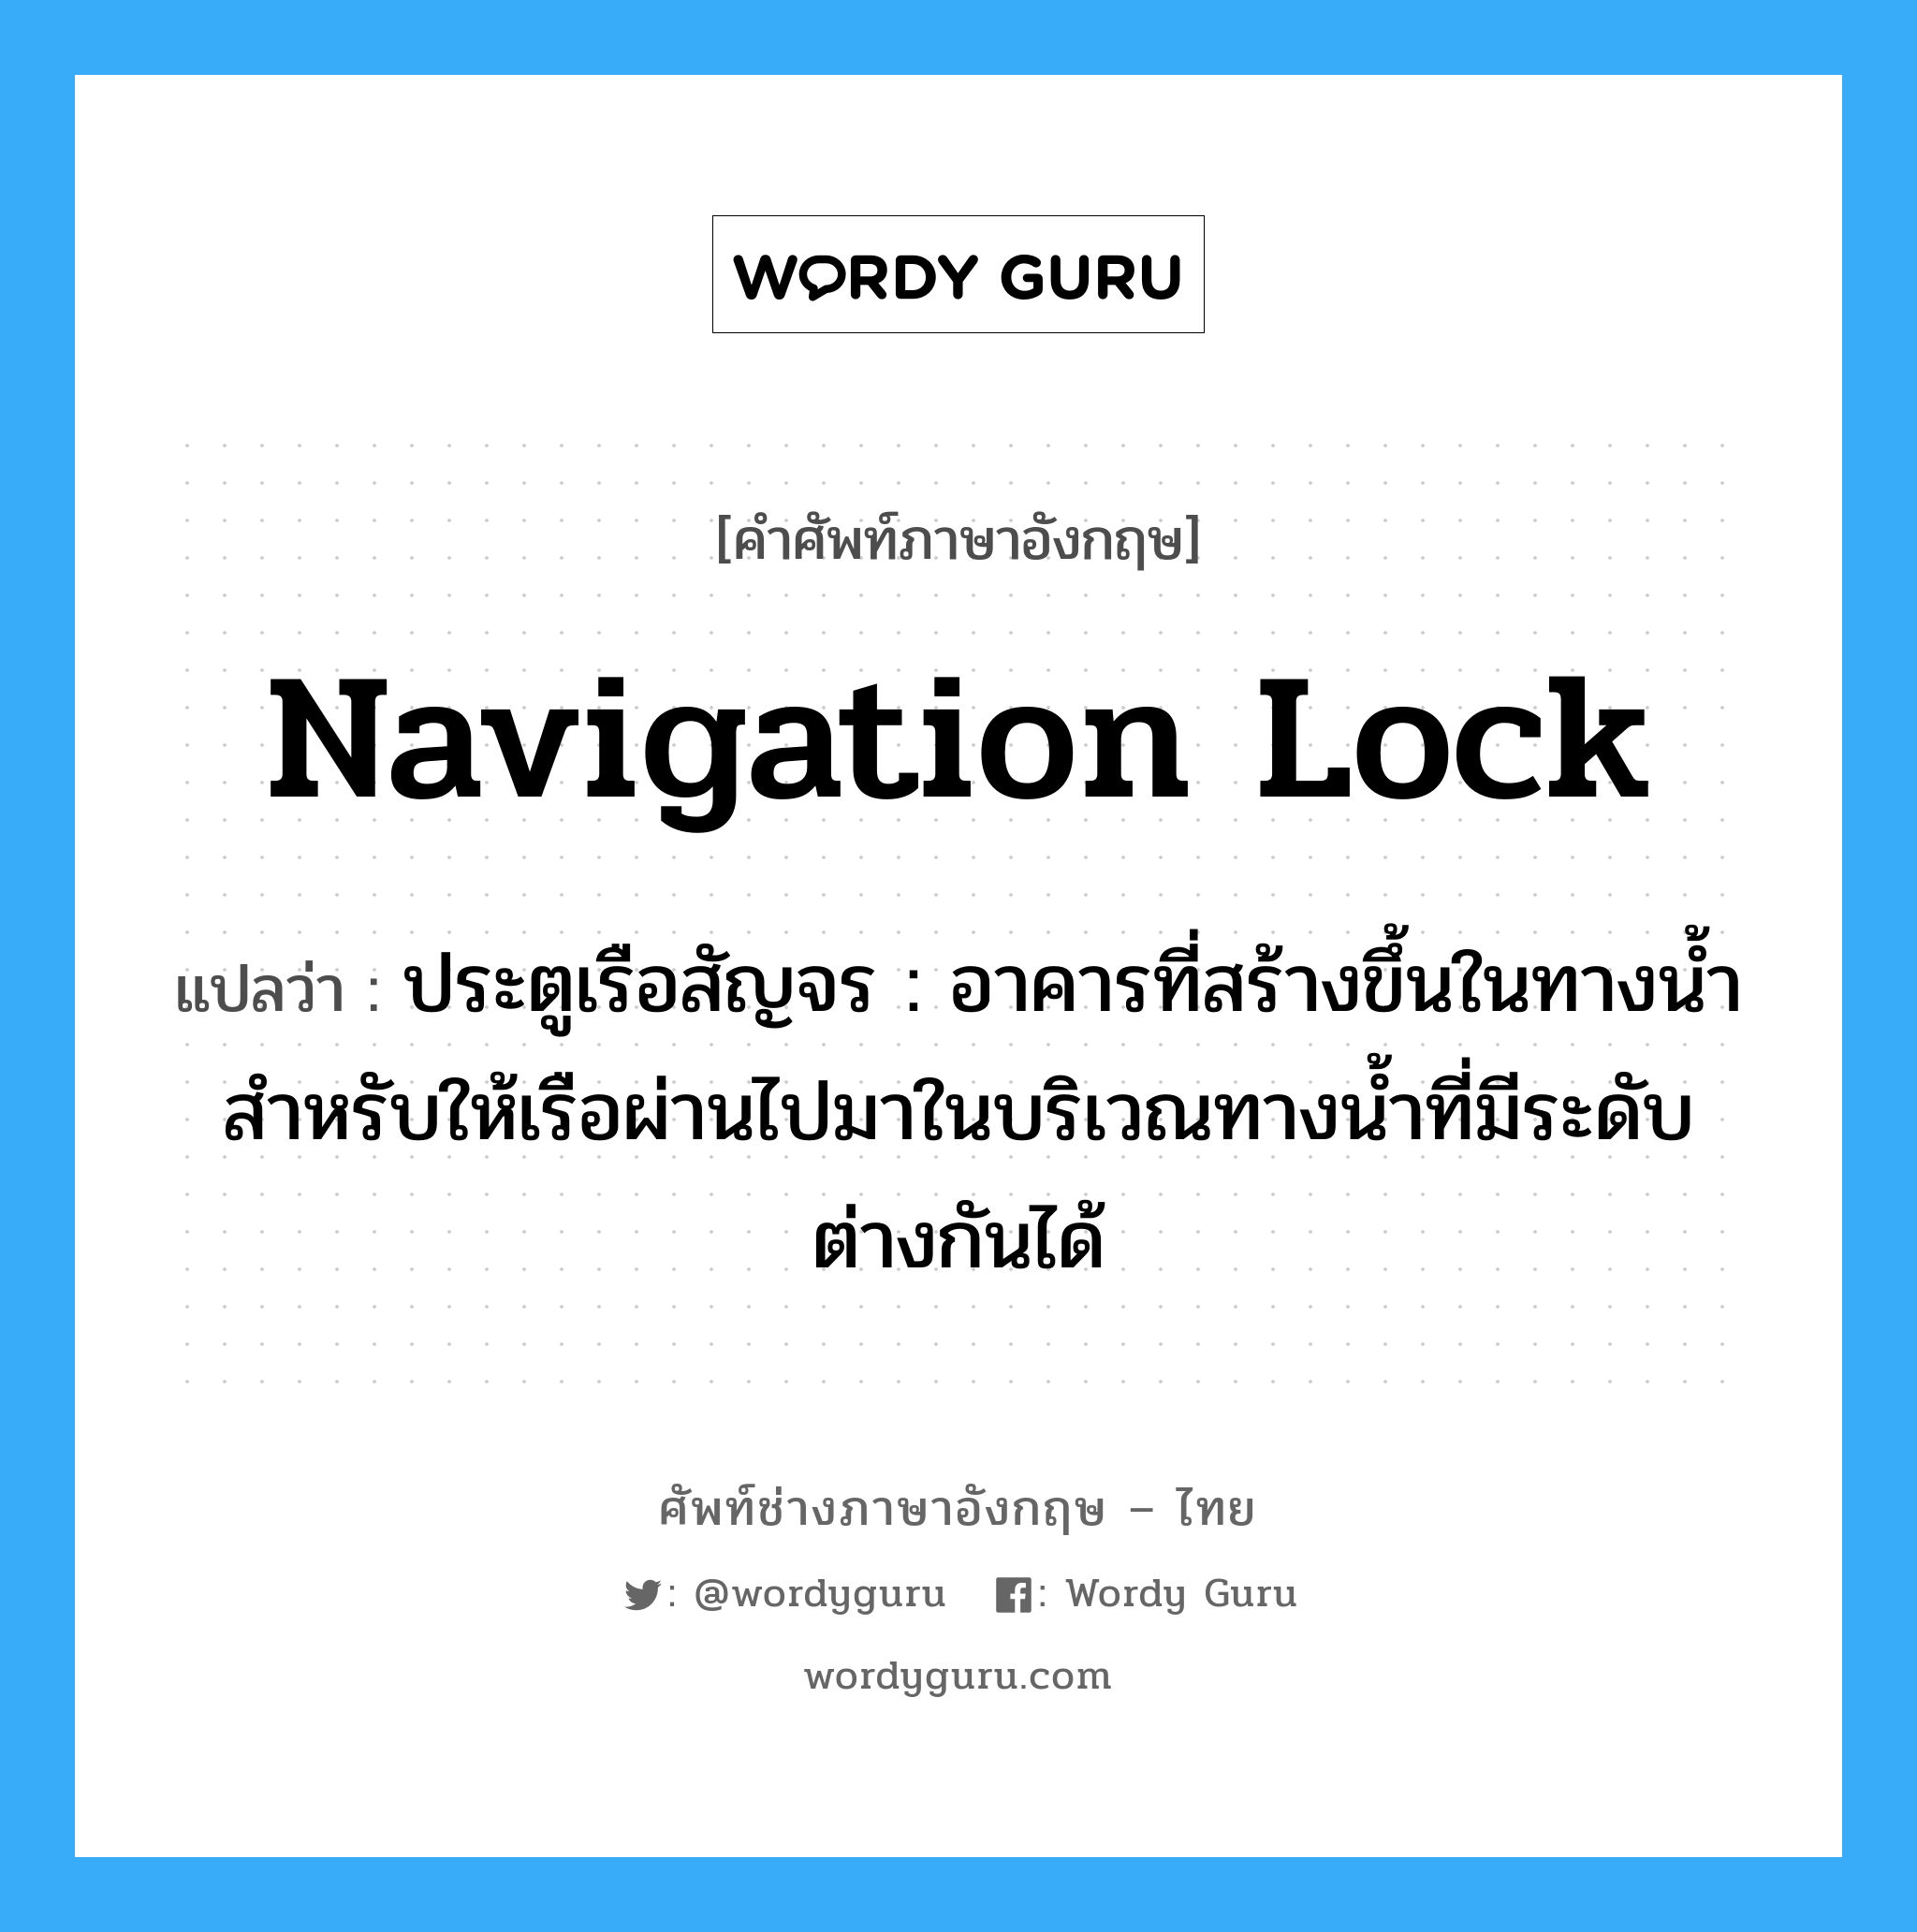 navigation lock แปลว่า?, คำศัพท์ช่างภาษาอังกฤษ - ไทย navigation lock คำศัพท์ภาษาอังกฤษ navigation lock แปลว่า ประตูเรือสัญจร : อาคารที่สร้างขึ้นในทางน้ำสำหรับให้เรือผ่านไปมาในบริเวณทางน้ำที่มีระดับต่างกันได้